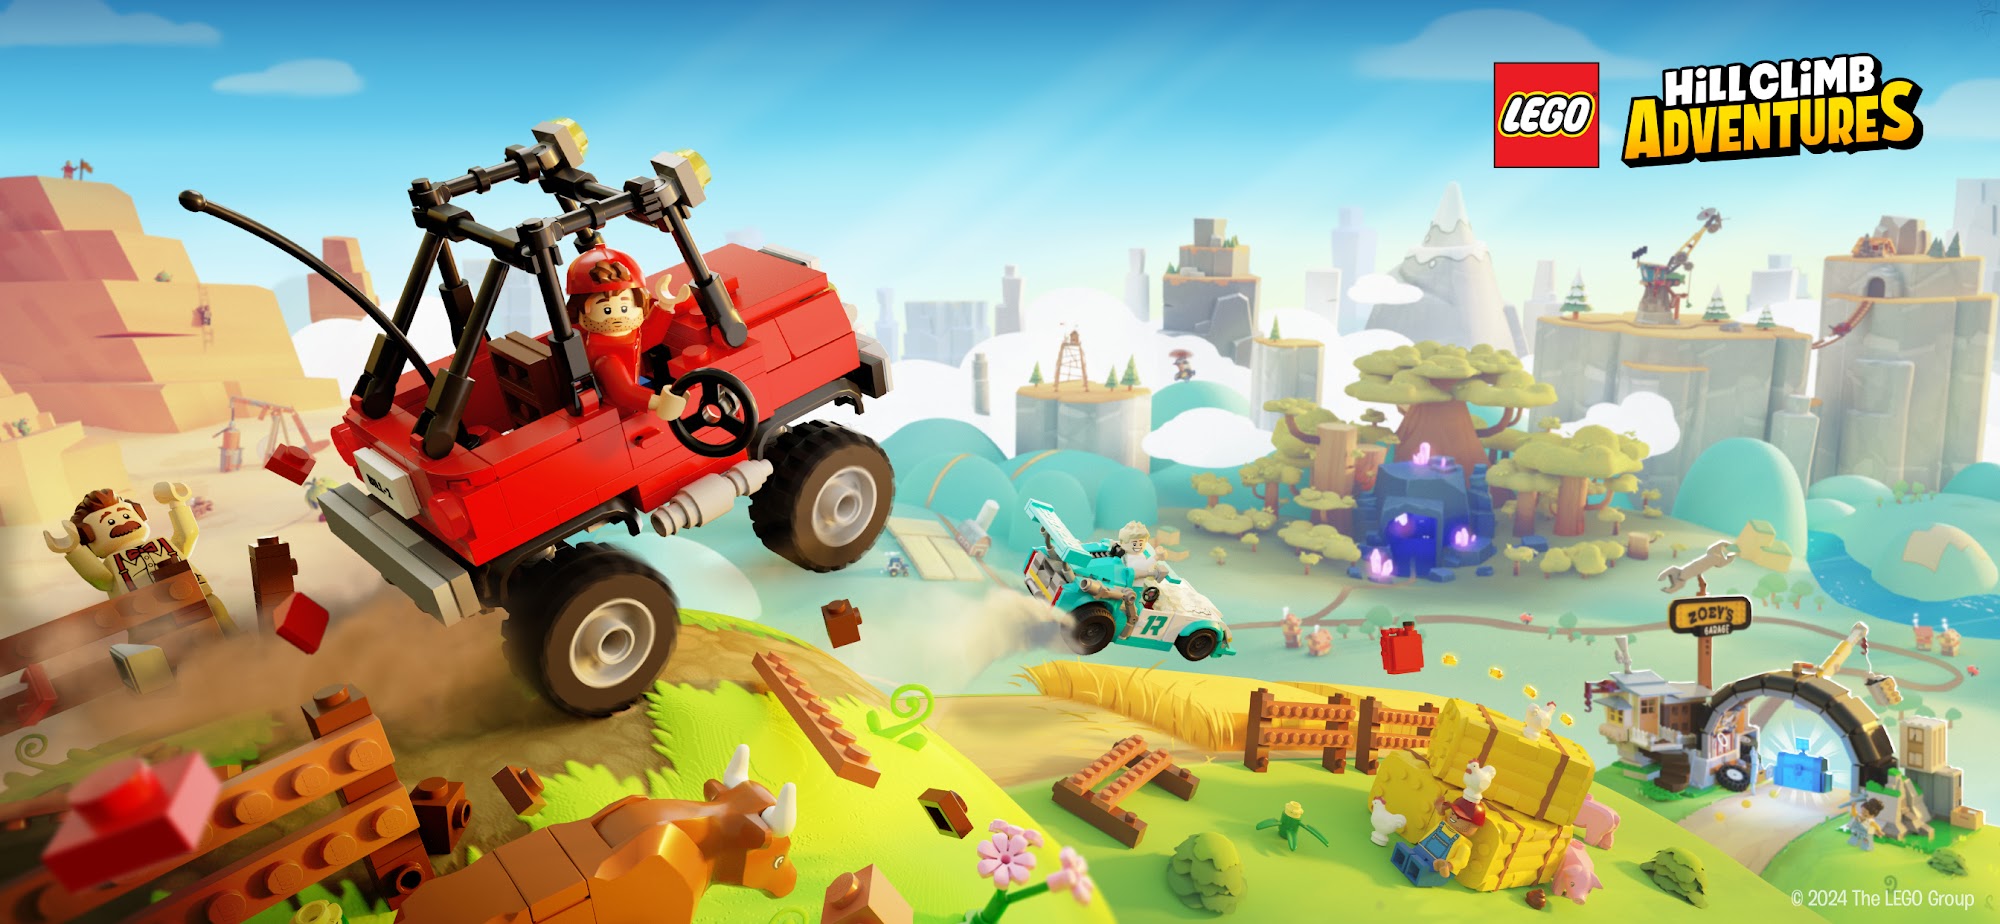 Télécharger LEGO® Hill Climb Adventures pour Android A.n.d.r.o.i.d. .5...0. .a.n.d. .m.o.r.e gratuit.